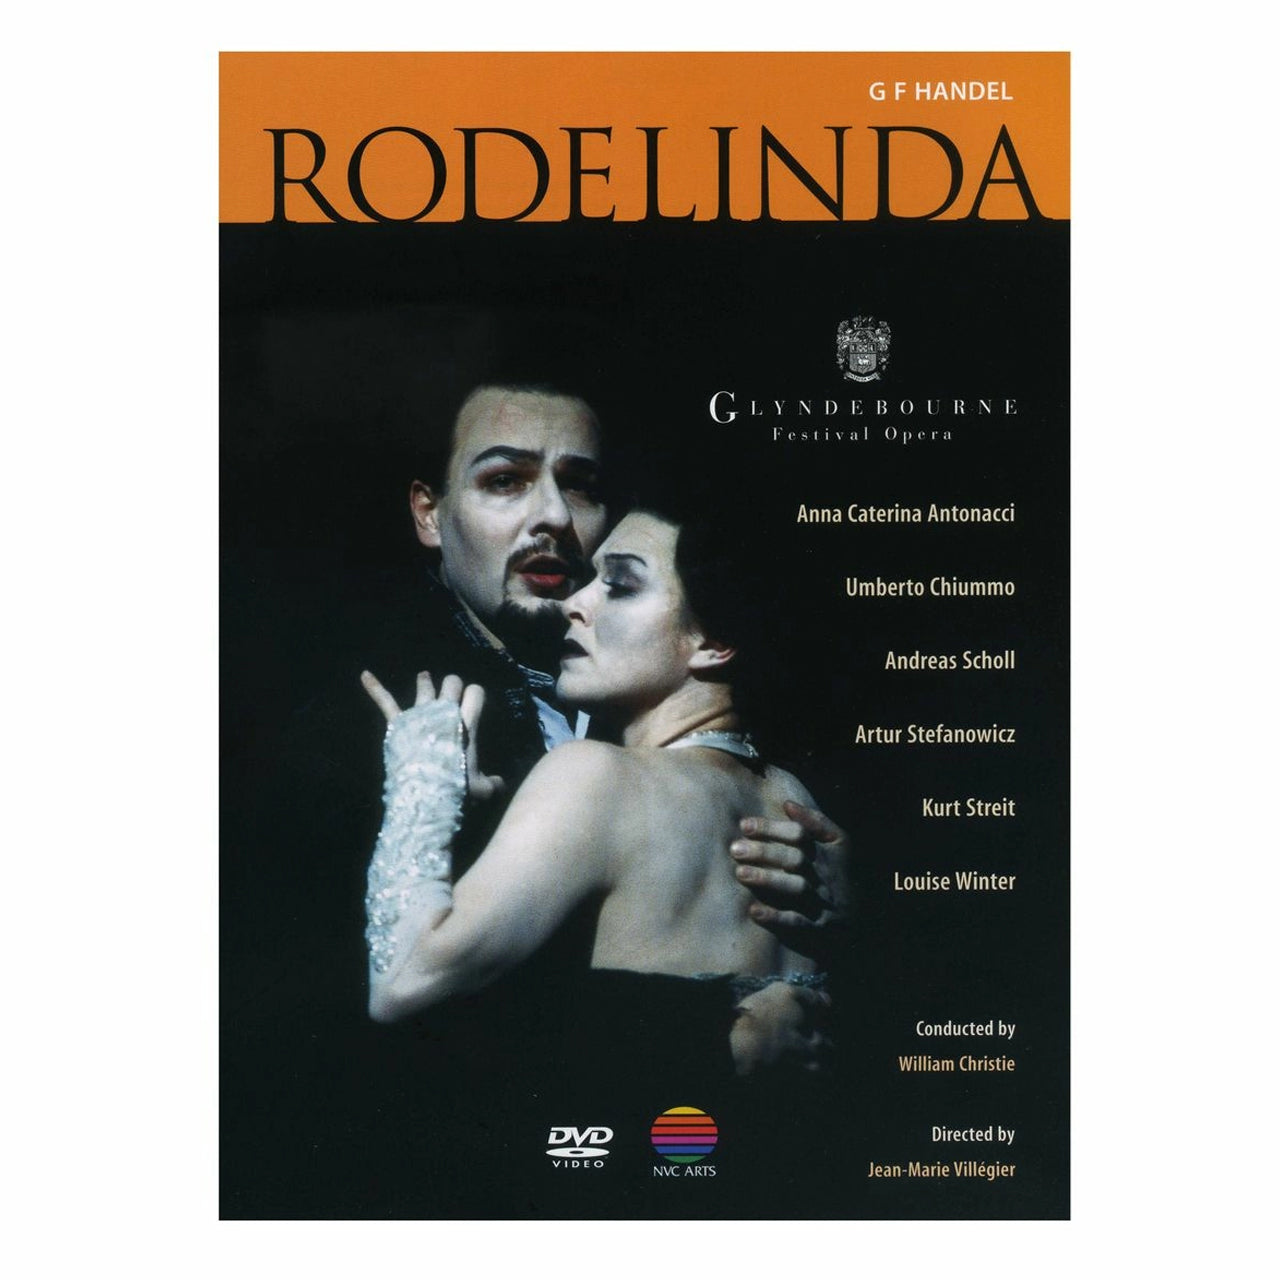 Rodelinda DVD 1998 Glyndebourne Shop